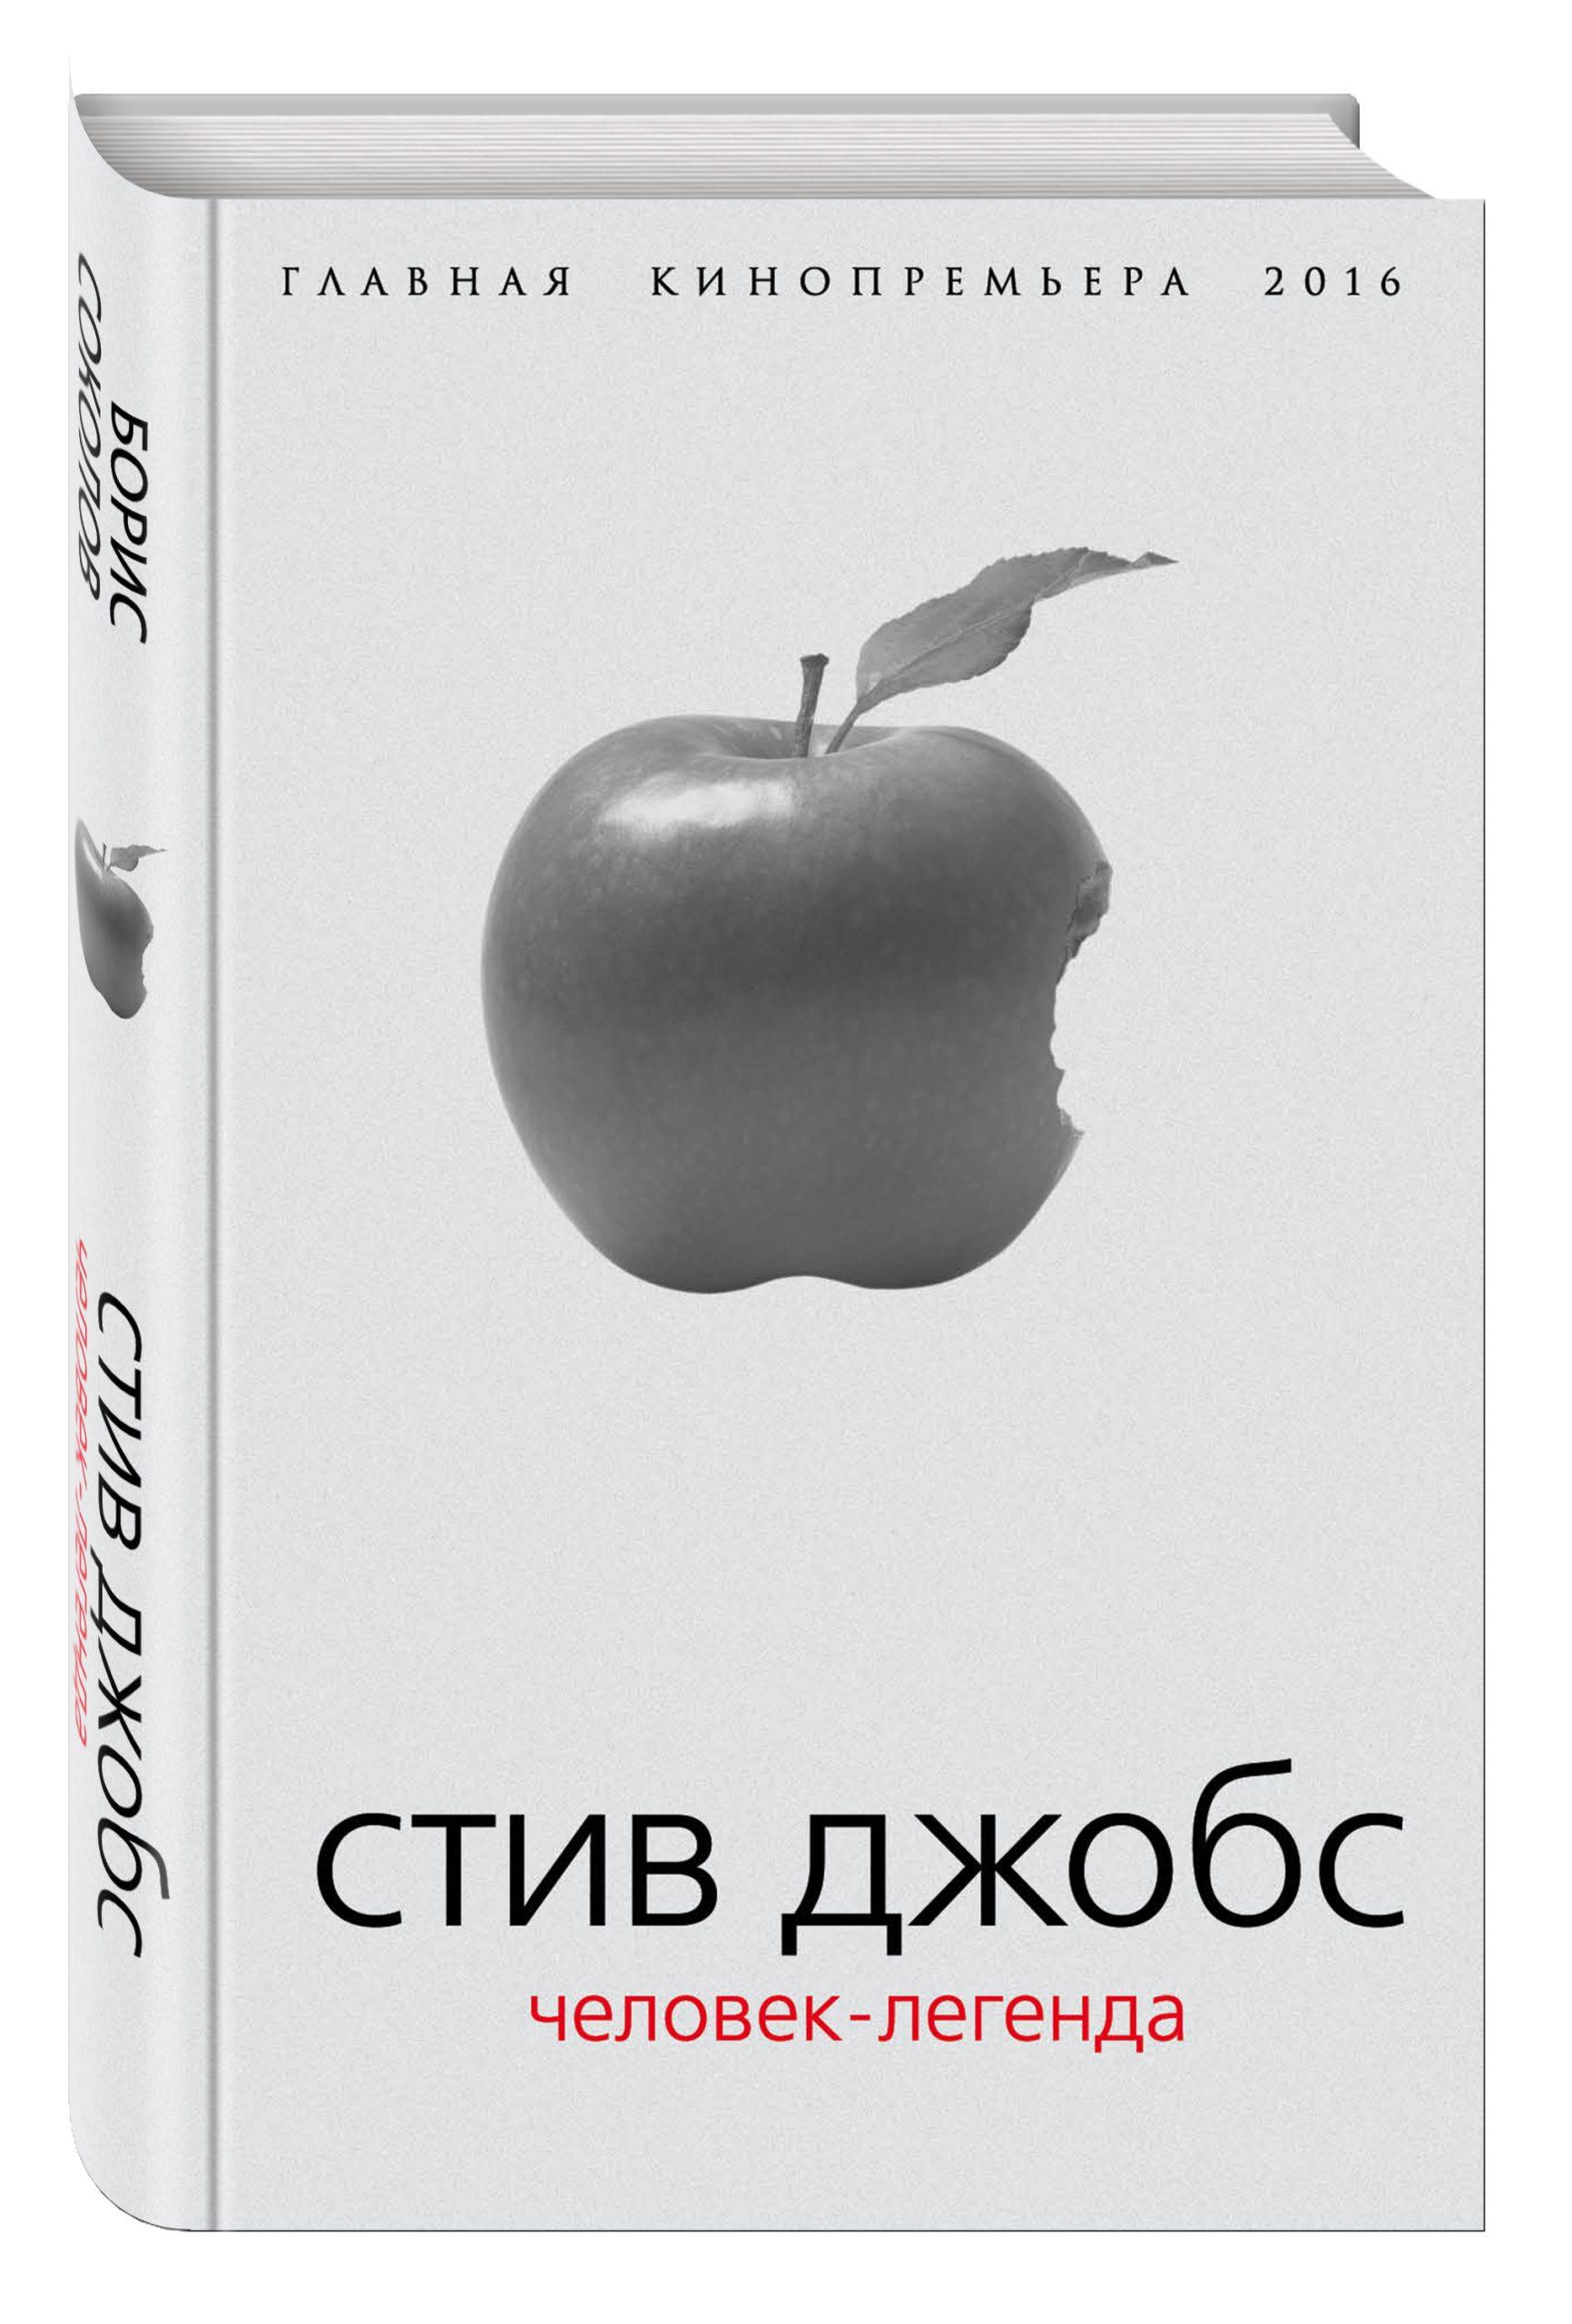 Стив Жобс - Apple-ийн хүн